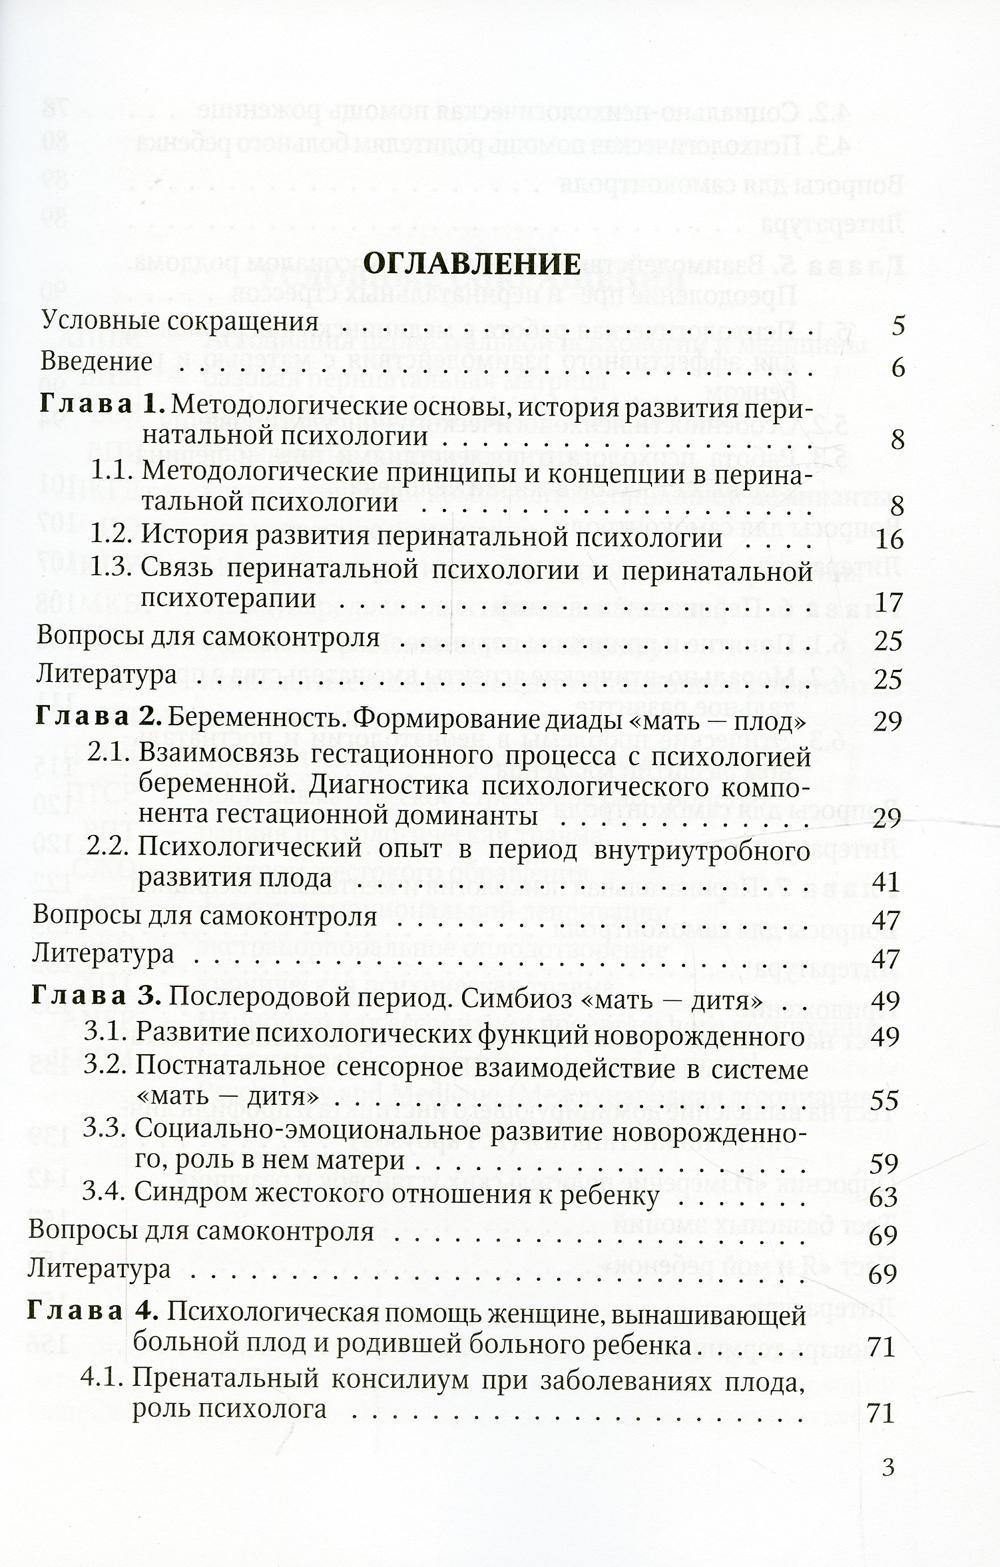 Перинатальная психология: Учебное пособие. 2-е изд., доп